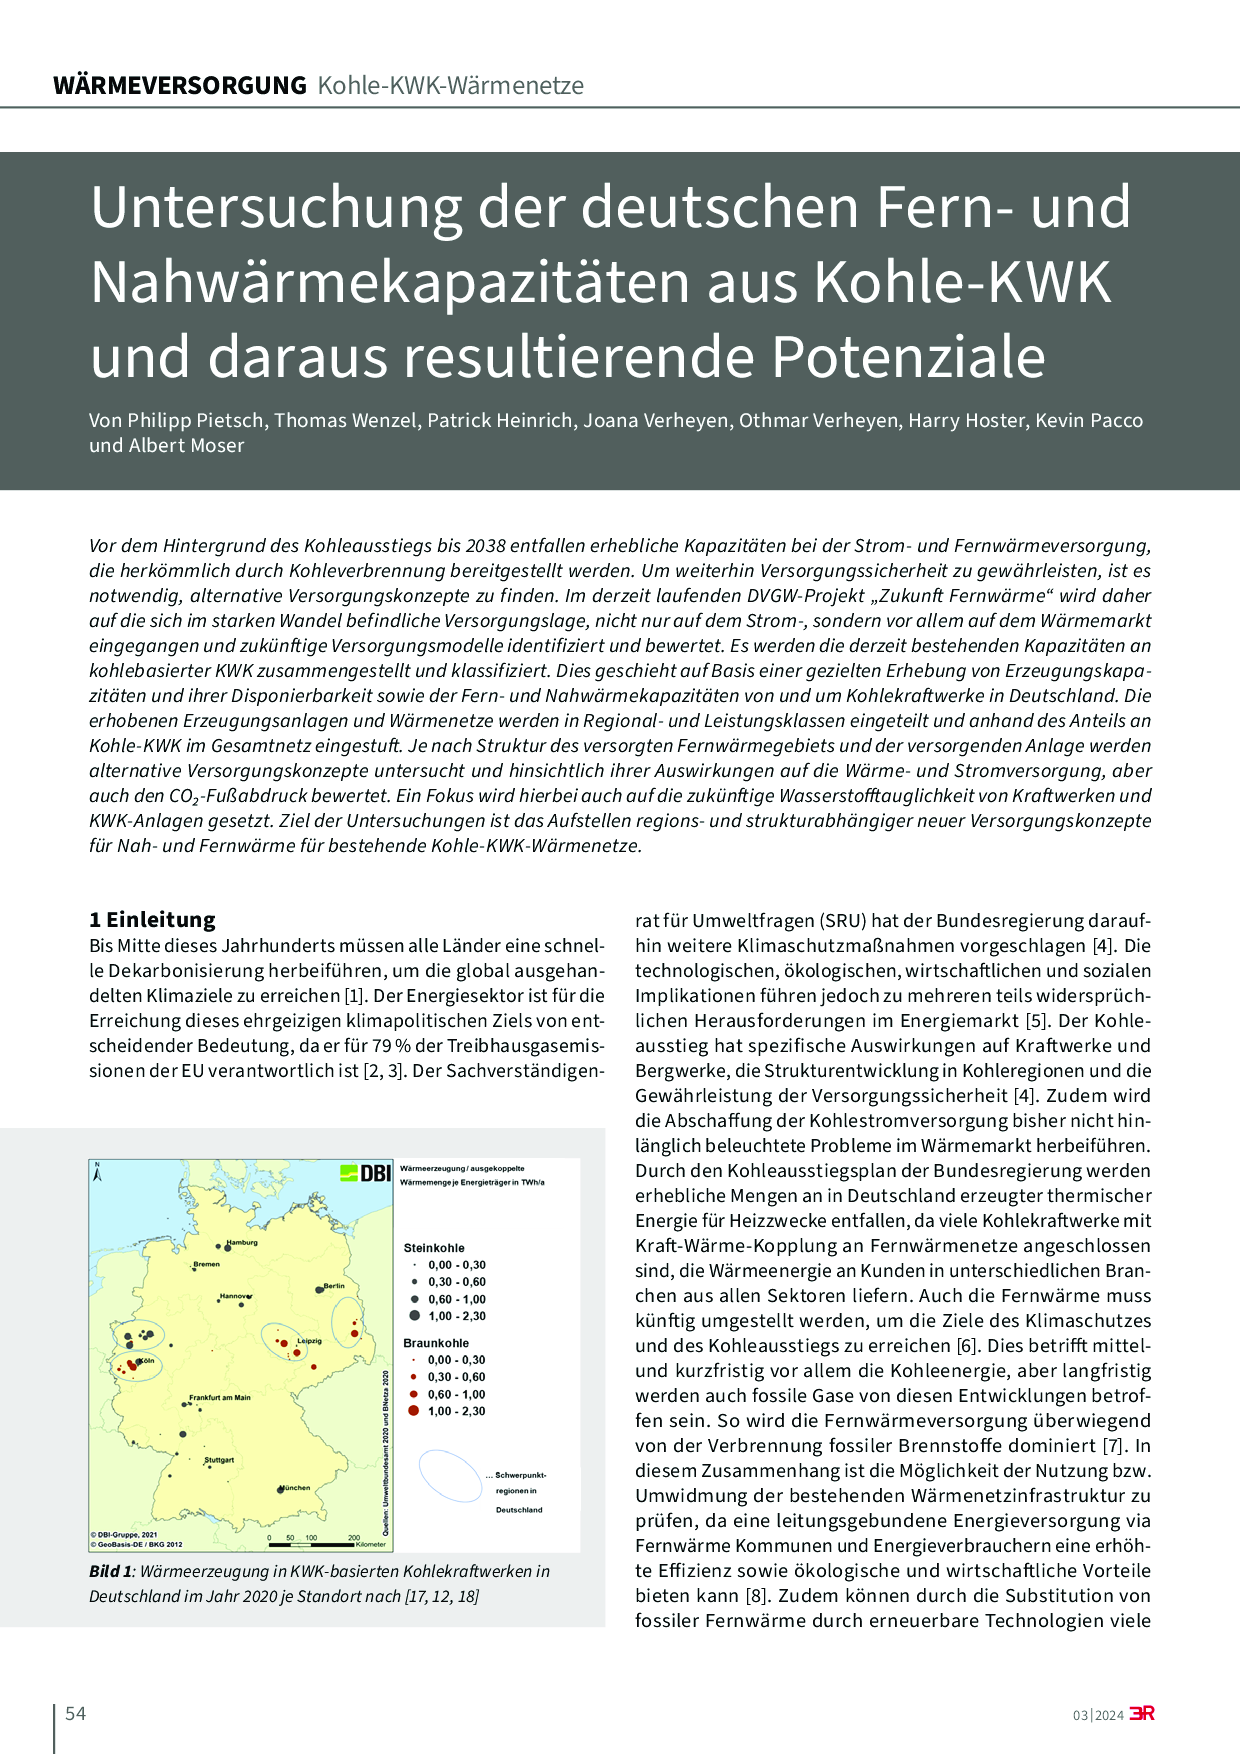 Untersuchung der deutschen Fern- und Nahwärmekapazitäten aus Kohle-KWK und daraus resultierende Potenziale